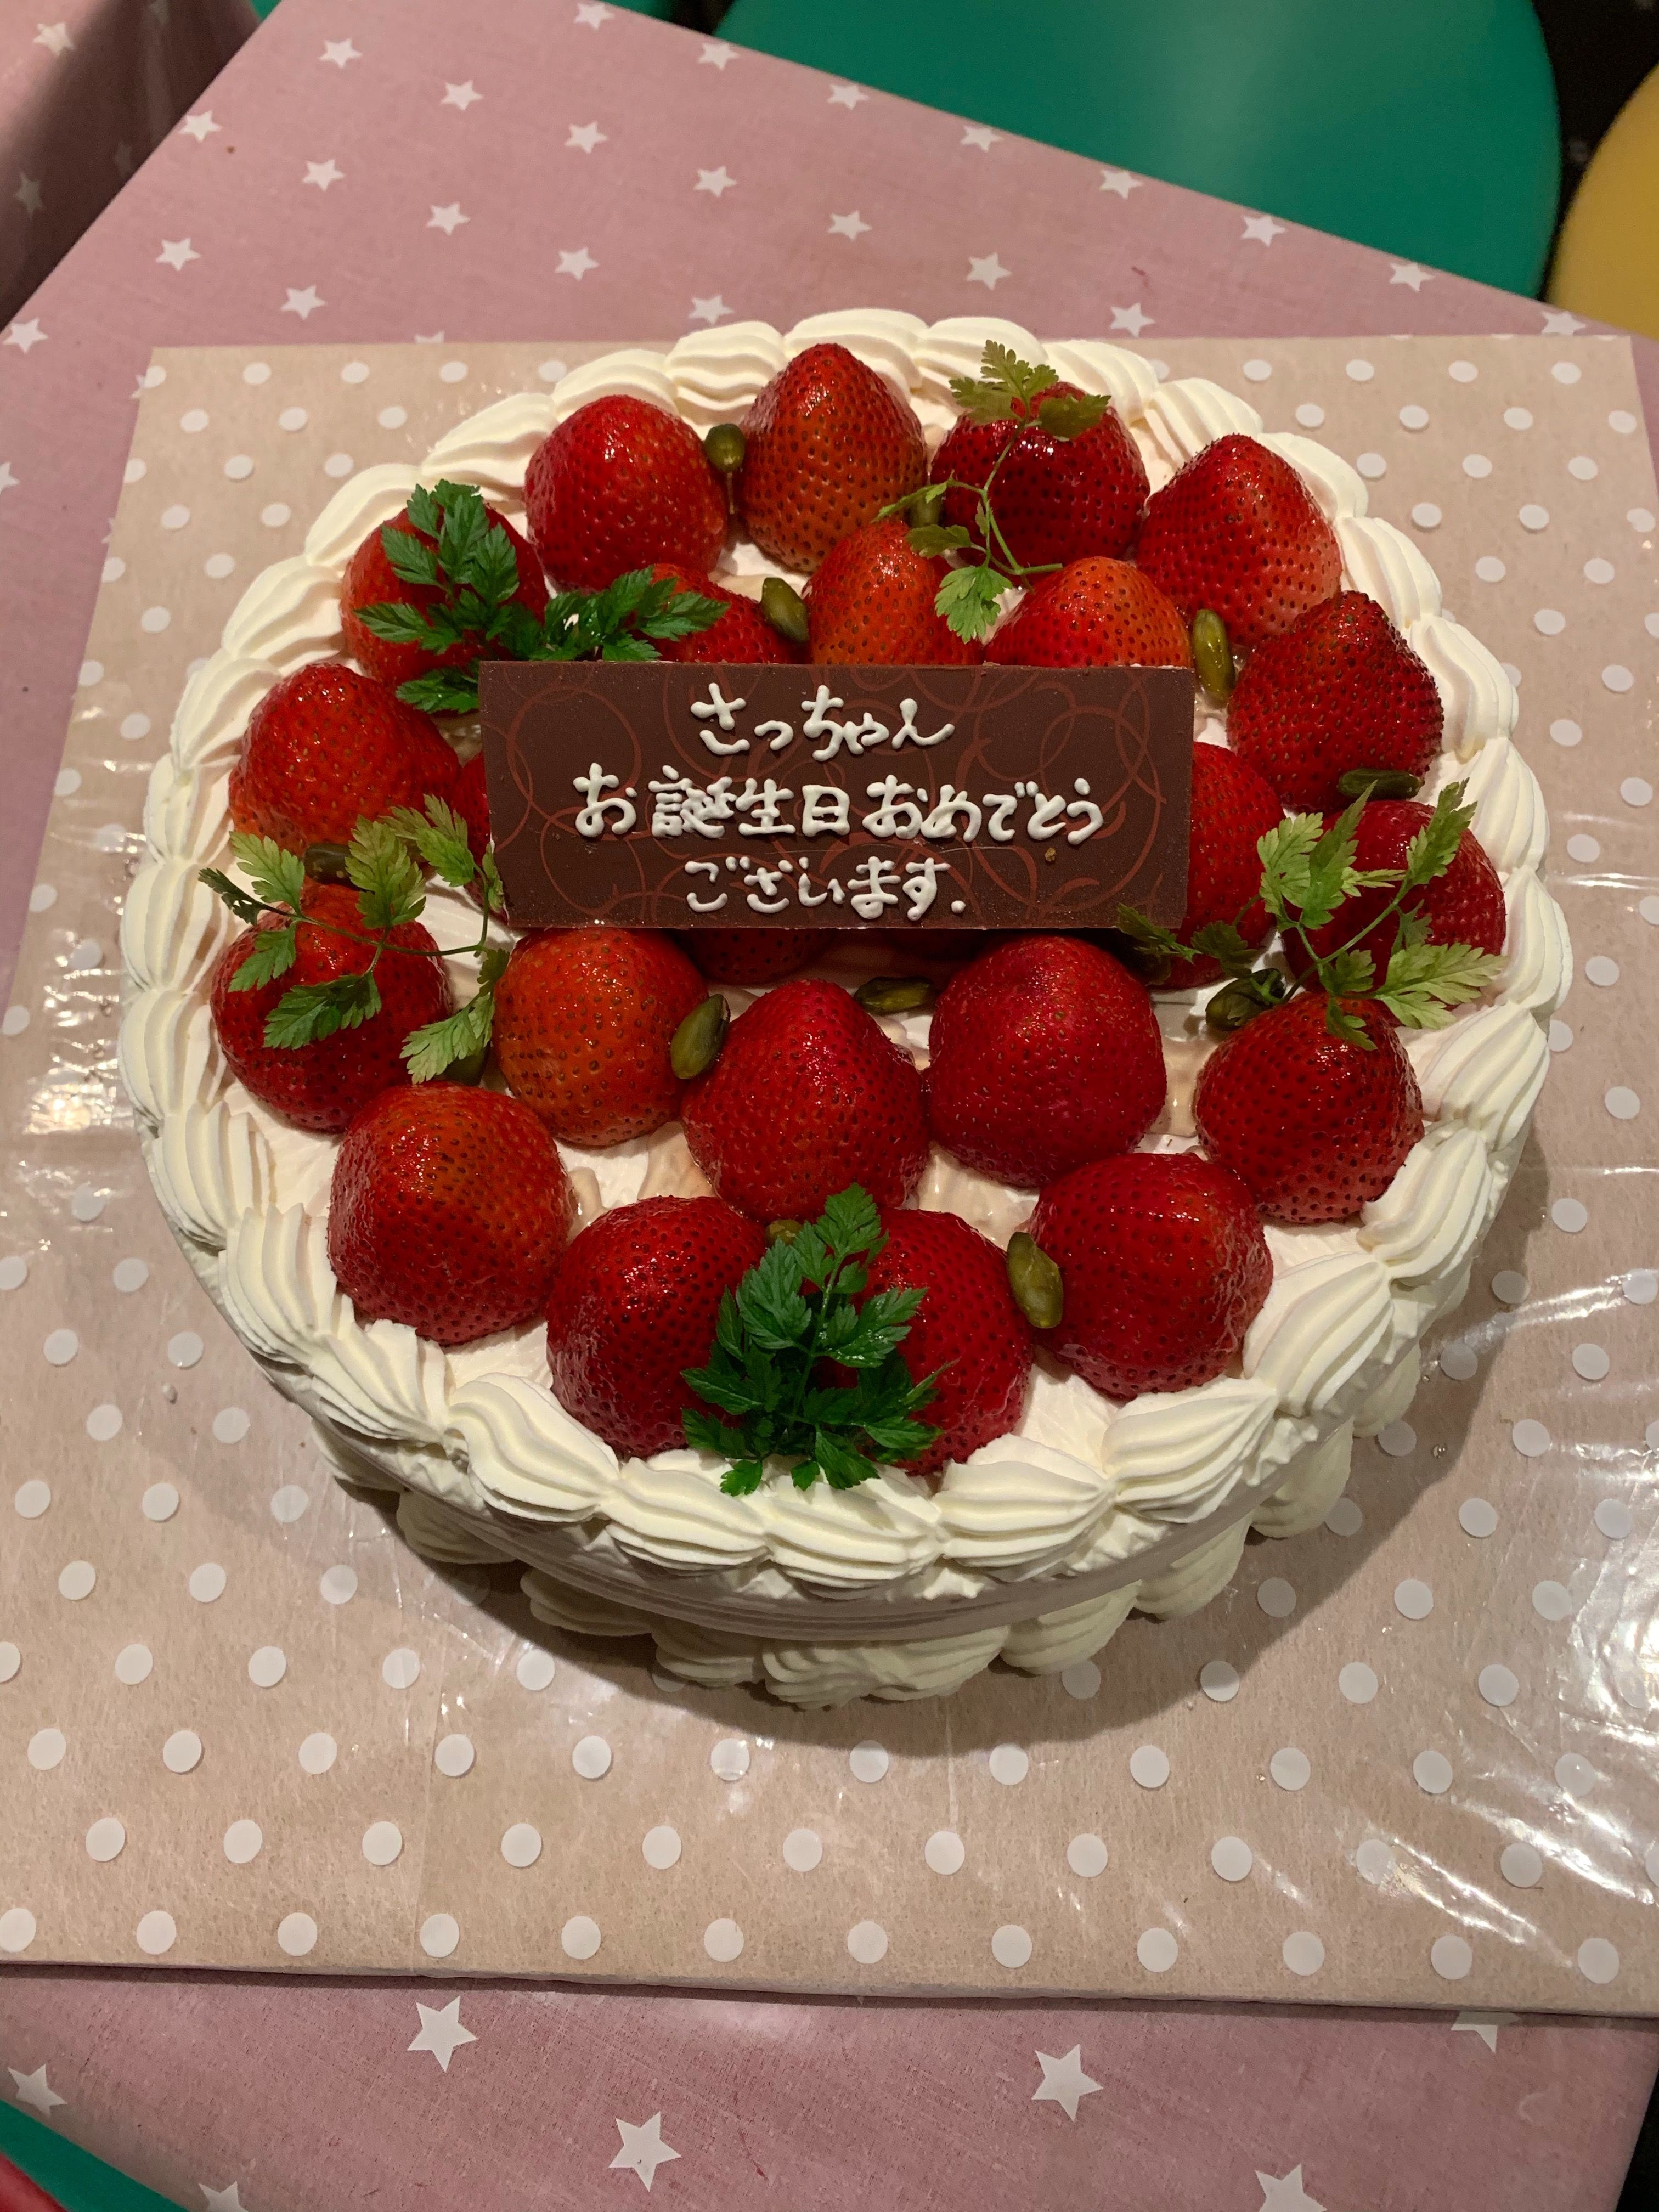 お誕生日ケーキ宅配 東京 横浜 川崎 デコレーションケーキの